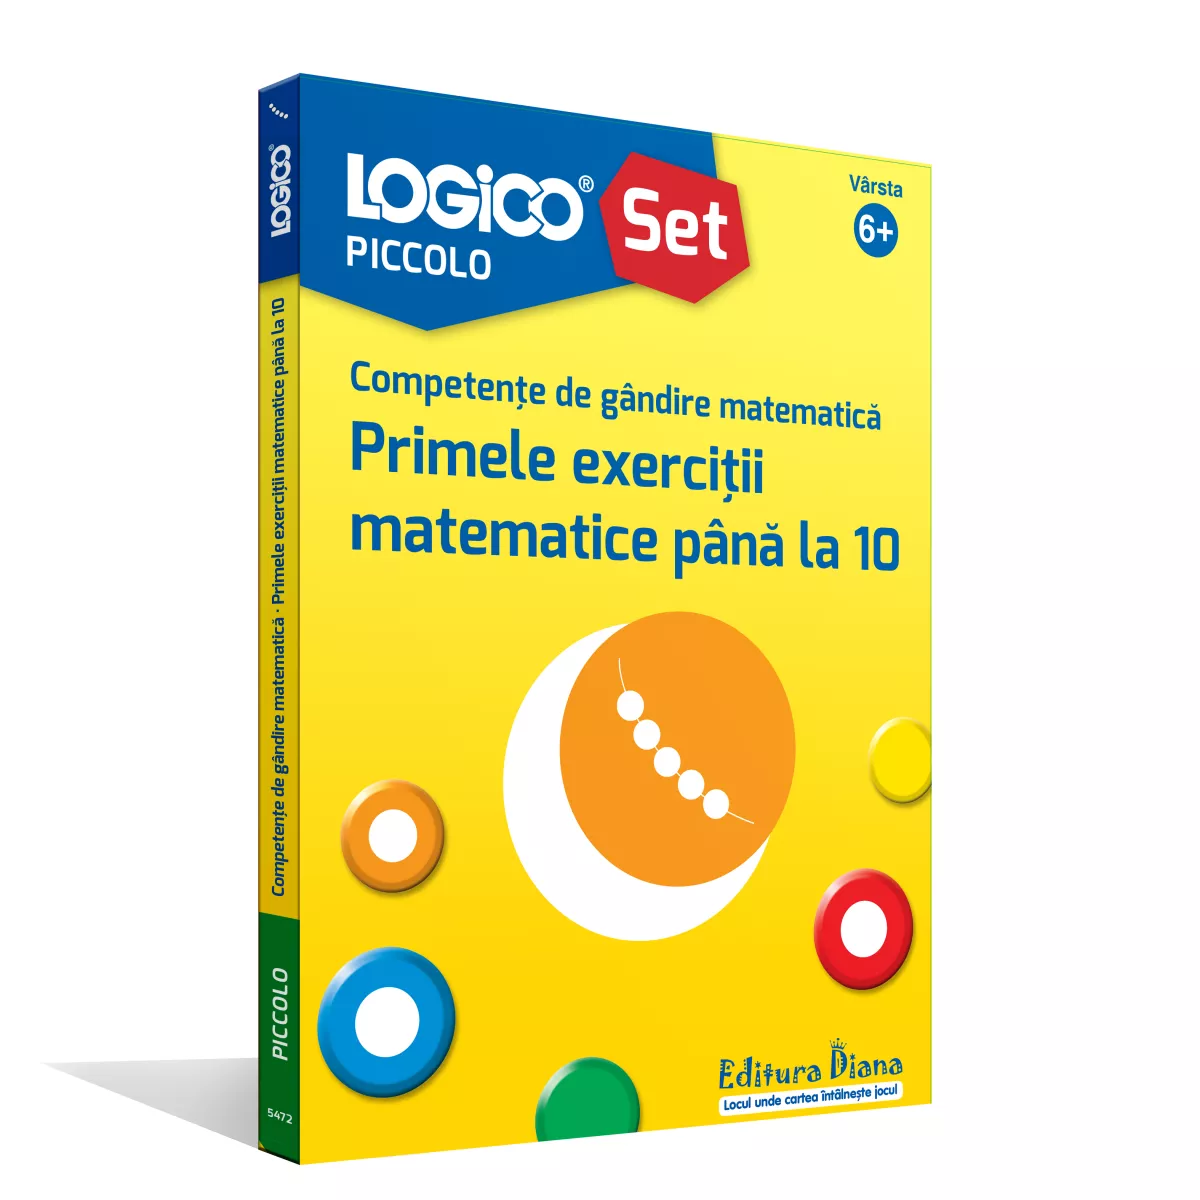 LOGICO PICCOLO - SET CU RAMĂ - Competențe de gândire matematică. Primele exerciții matematice până la 10 (6+)